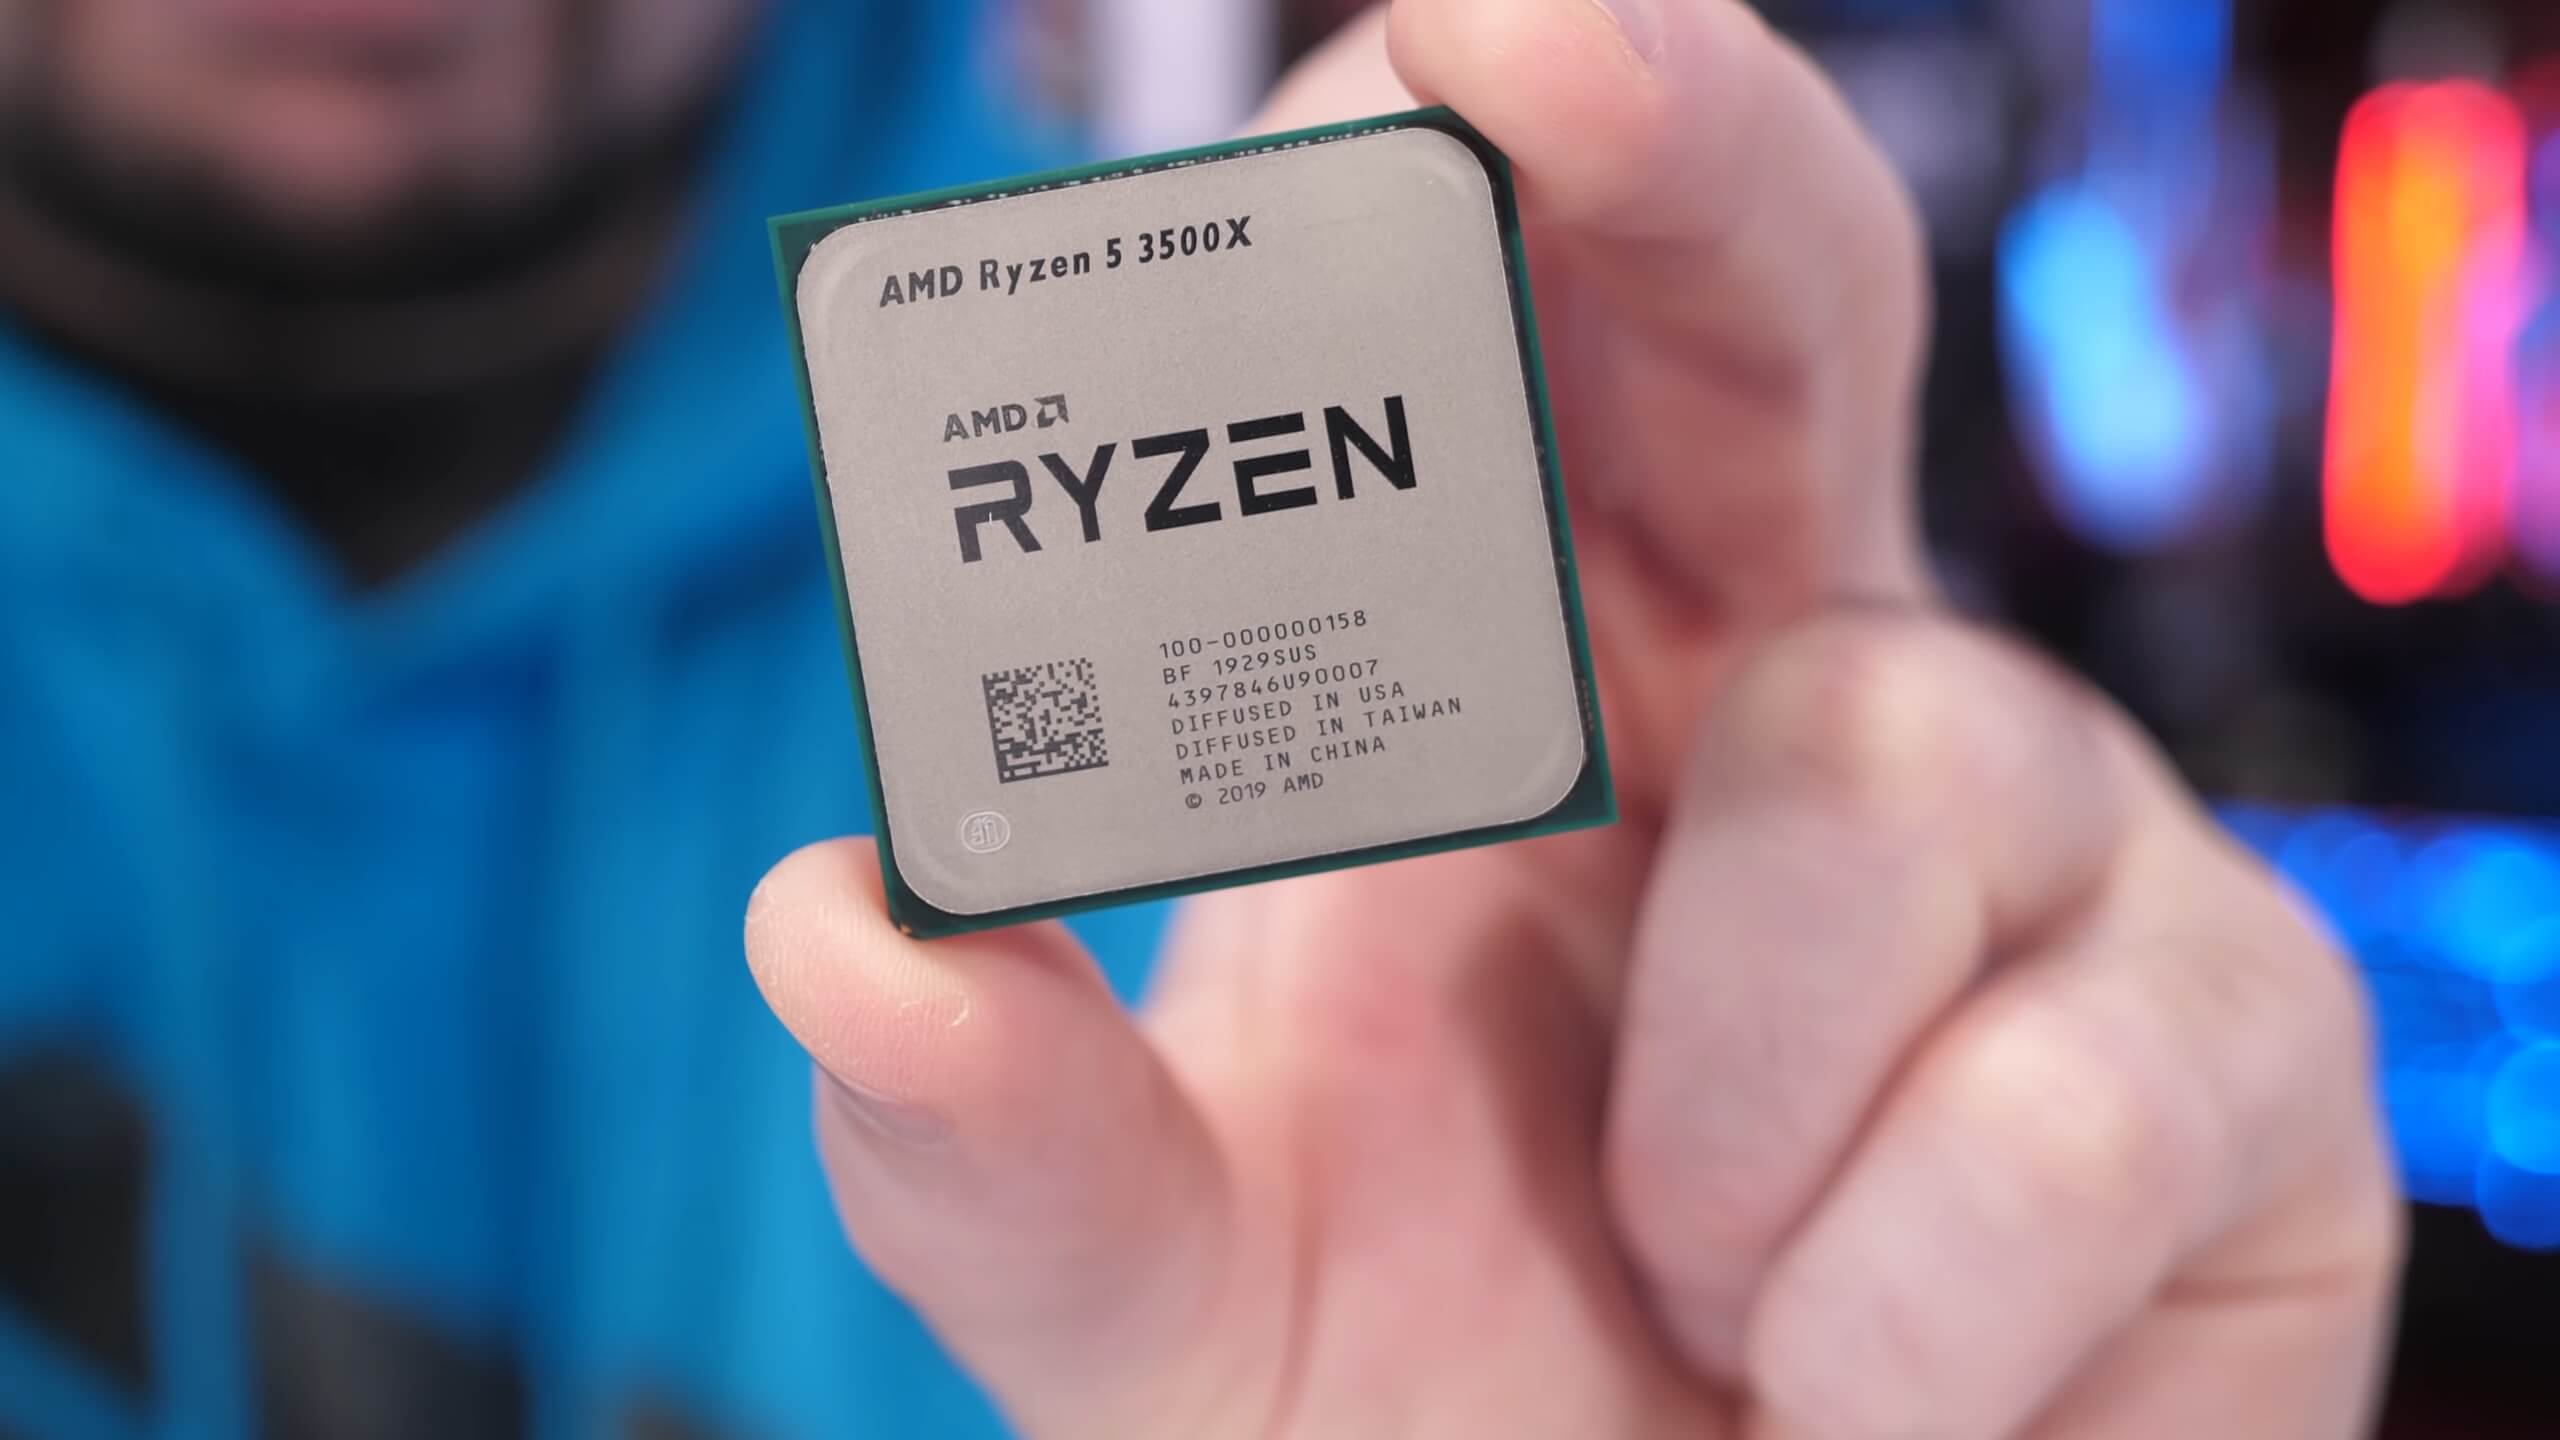 AMD Ryzen 5 3500X Review: Cheapest Zen 2 vs. R5 2600 vs. Core i5 